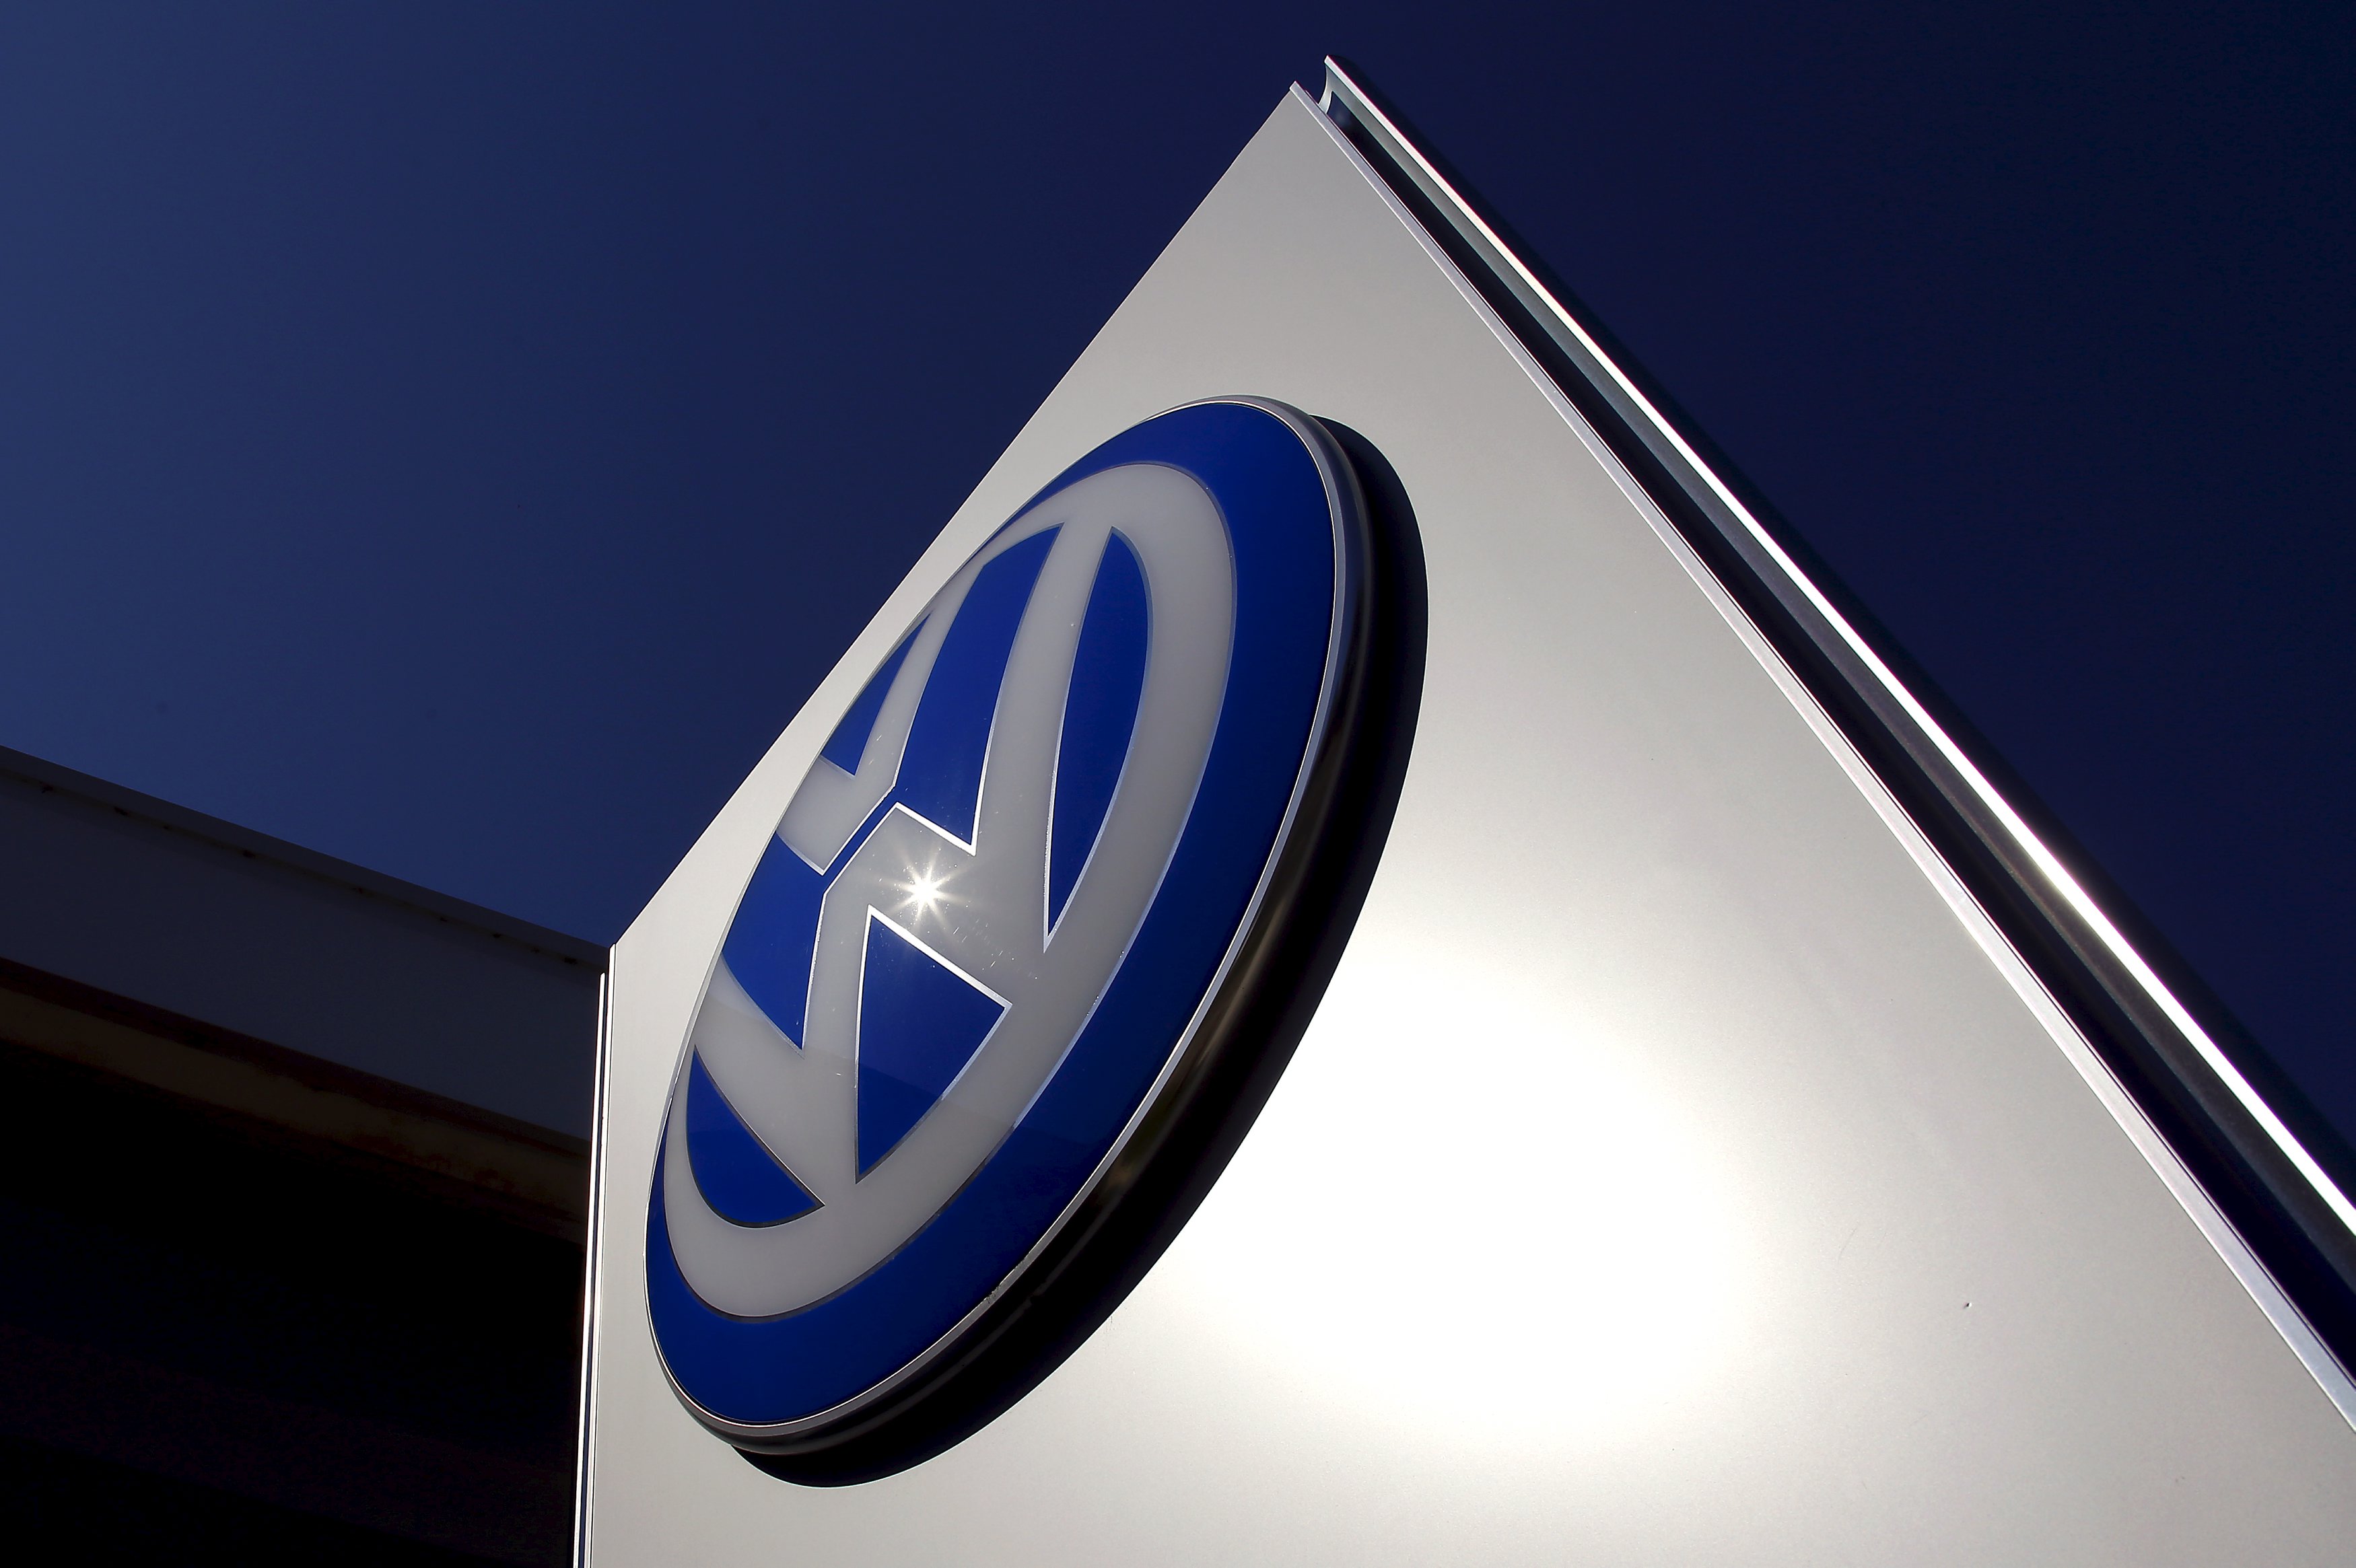 Σκάνδαλο VW: Το φαινόμενο ντόμινο καθορίζει την τύχη των οικονομιών